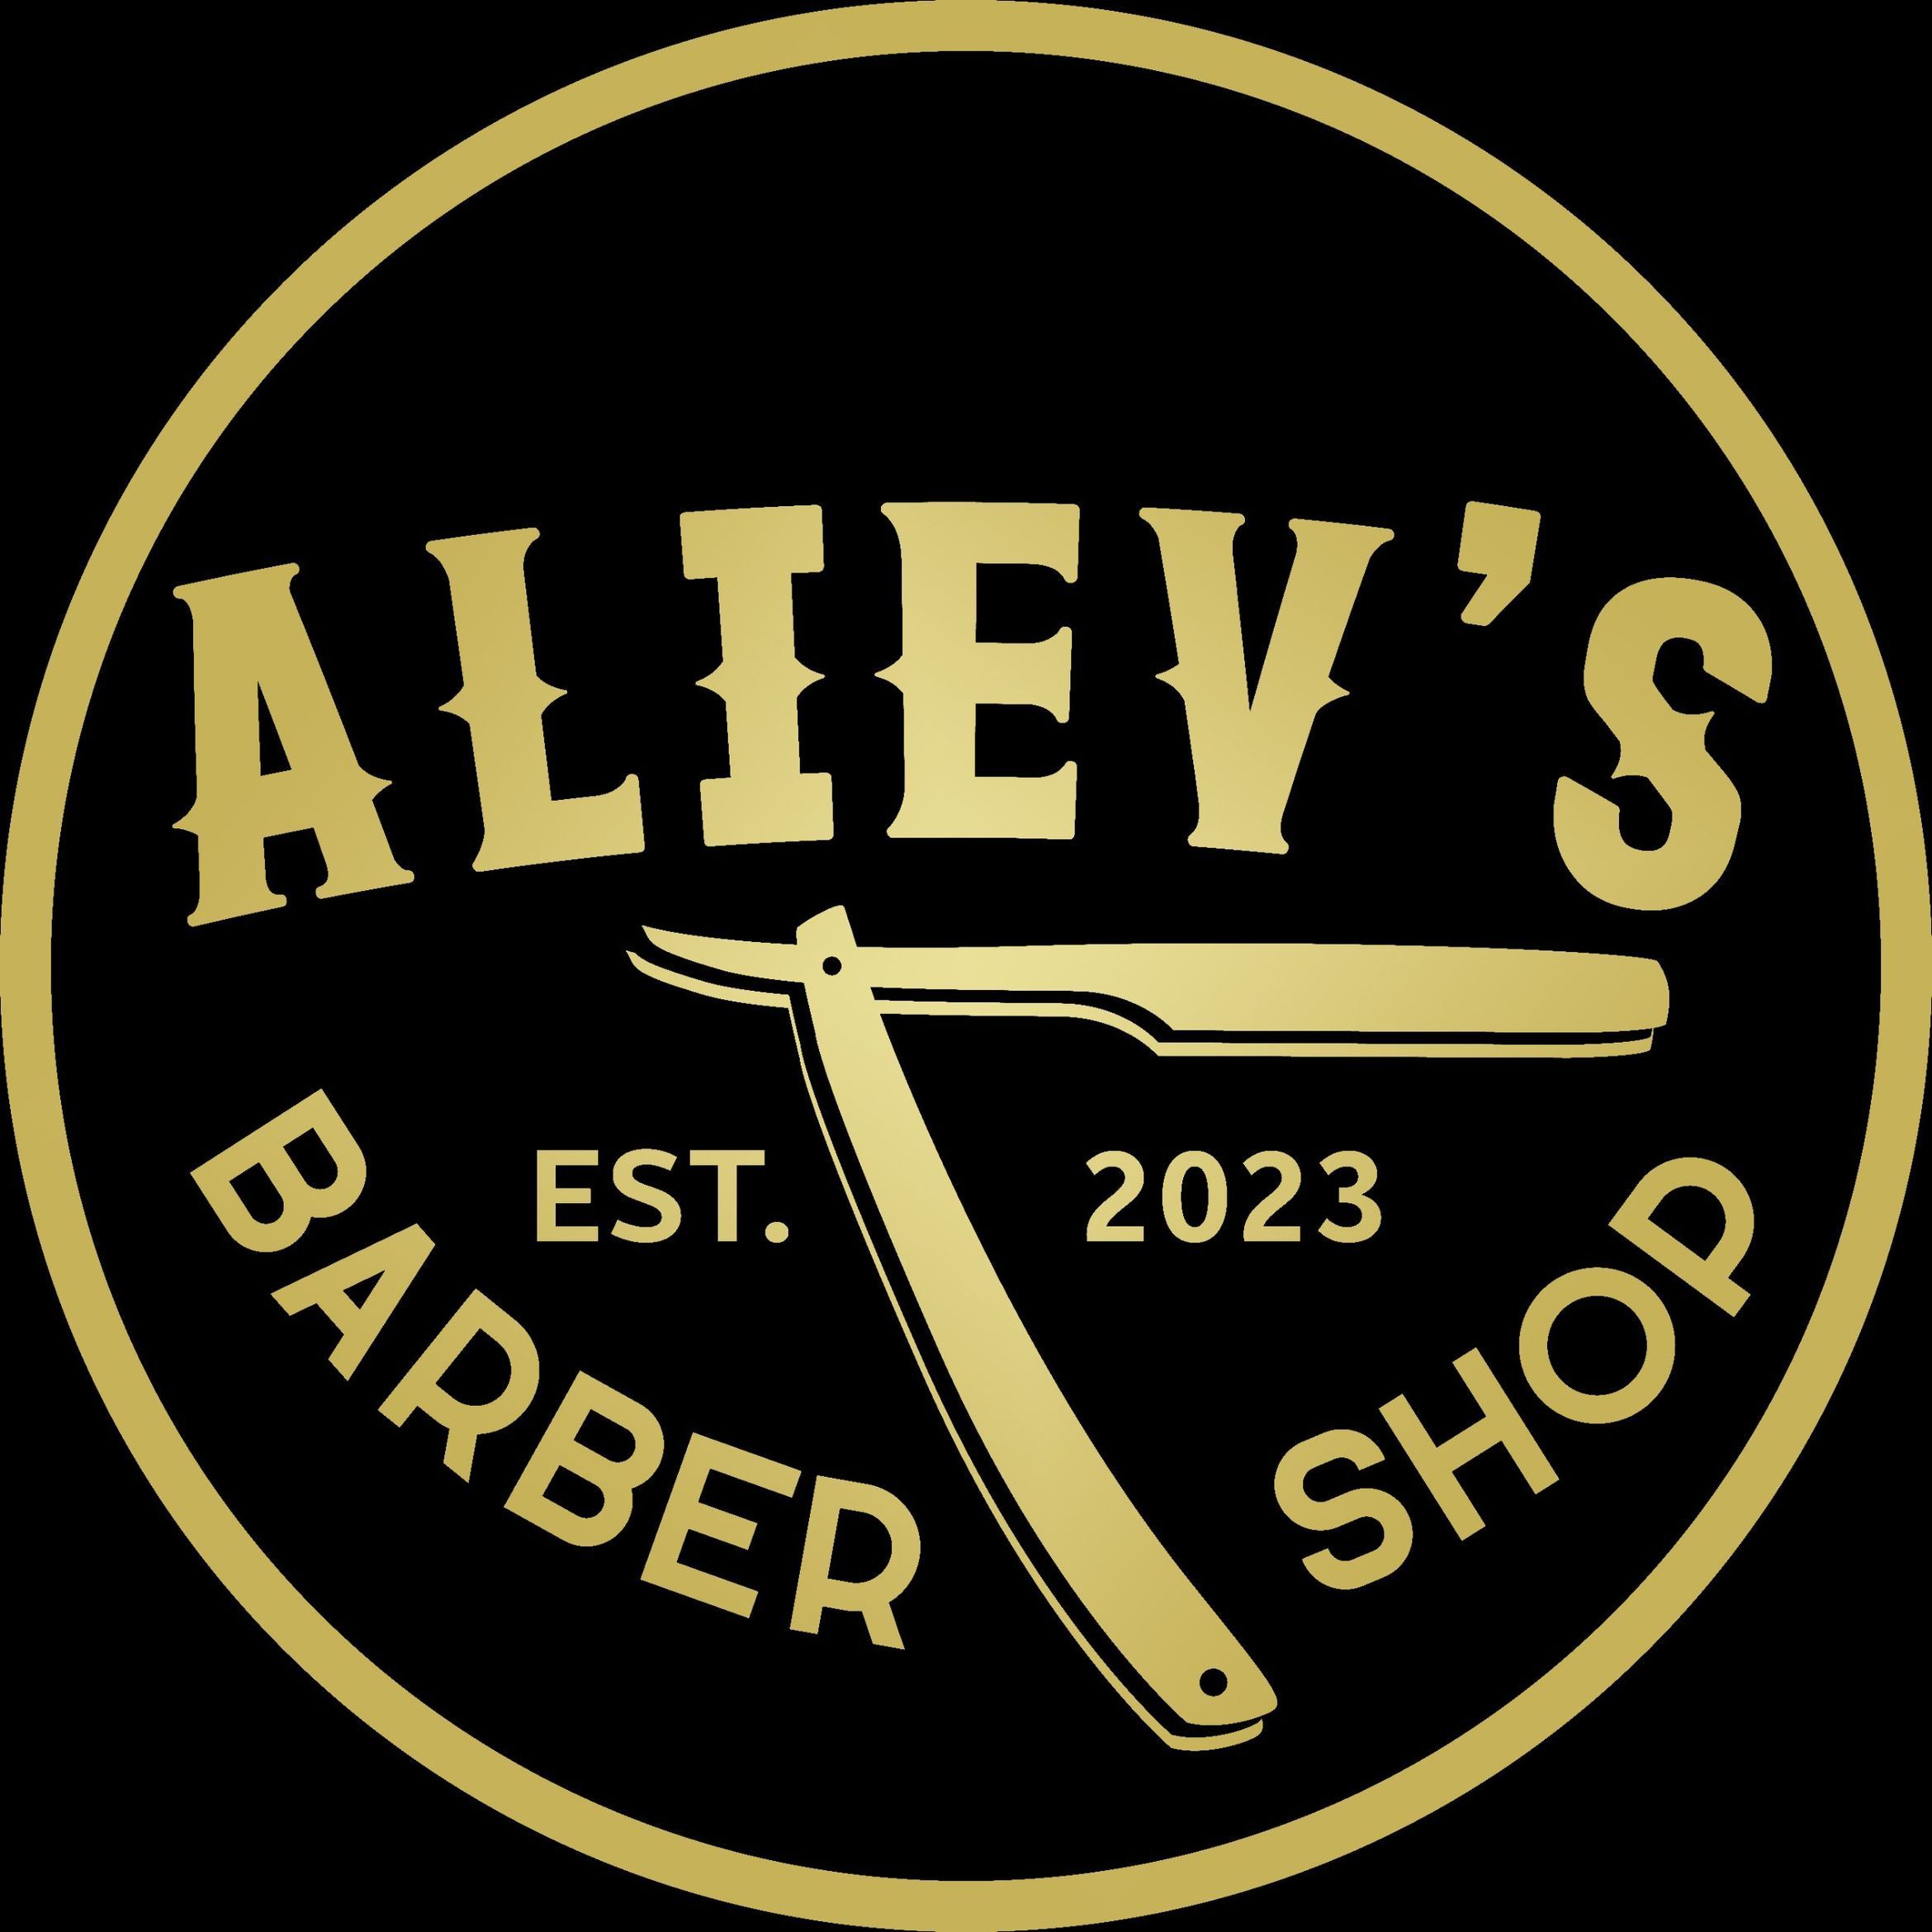 Alievs Barbershop, Długie Ogrody 18, Lokal U02, 80-765, Gdańsk